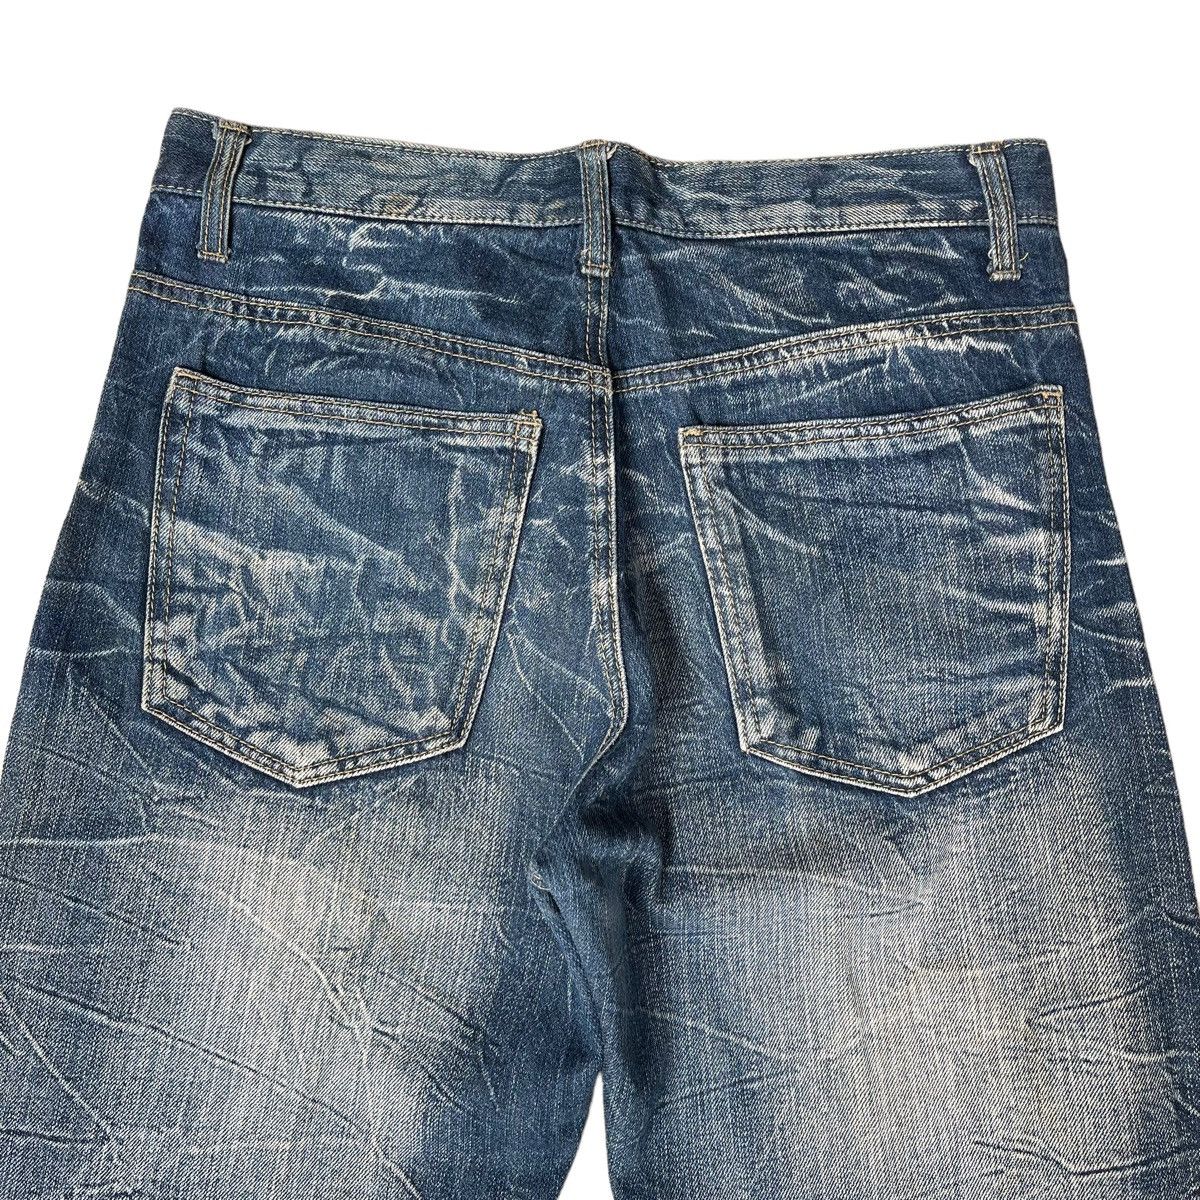 Japanase Unbrand Denim Flare Jeans 30 - 7